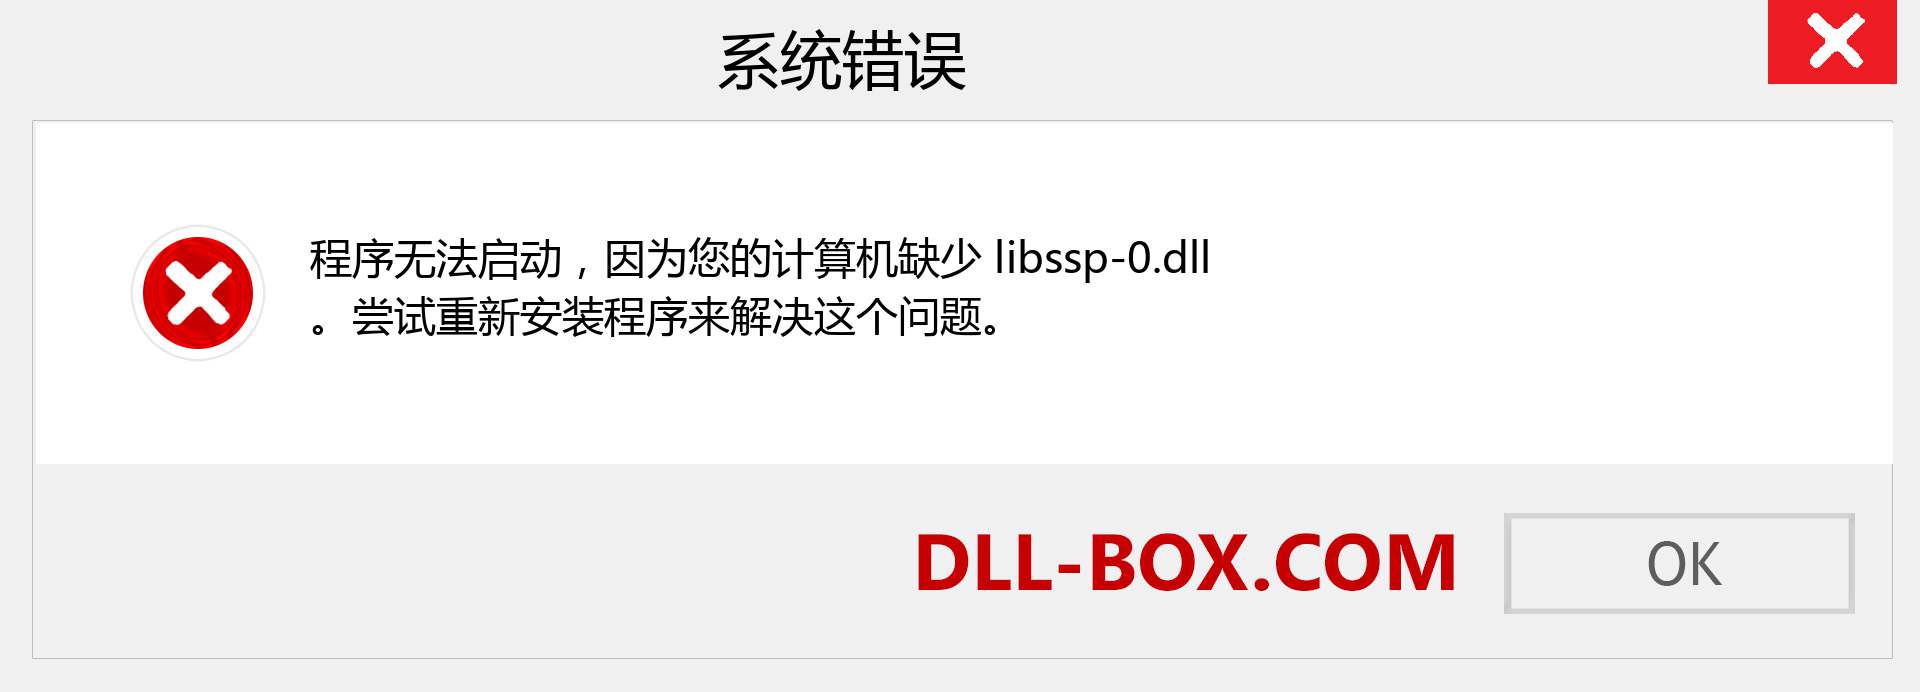 libssp-0.dll 文件丢失？。 适用于 Windows 7、8、10 的下载 - 修复 Windows、照片、图像上的 libssp-0 dll 丢失错误